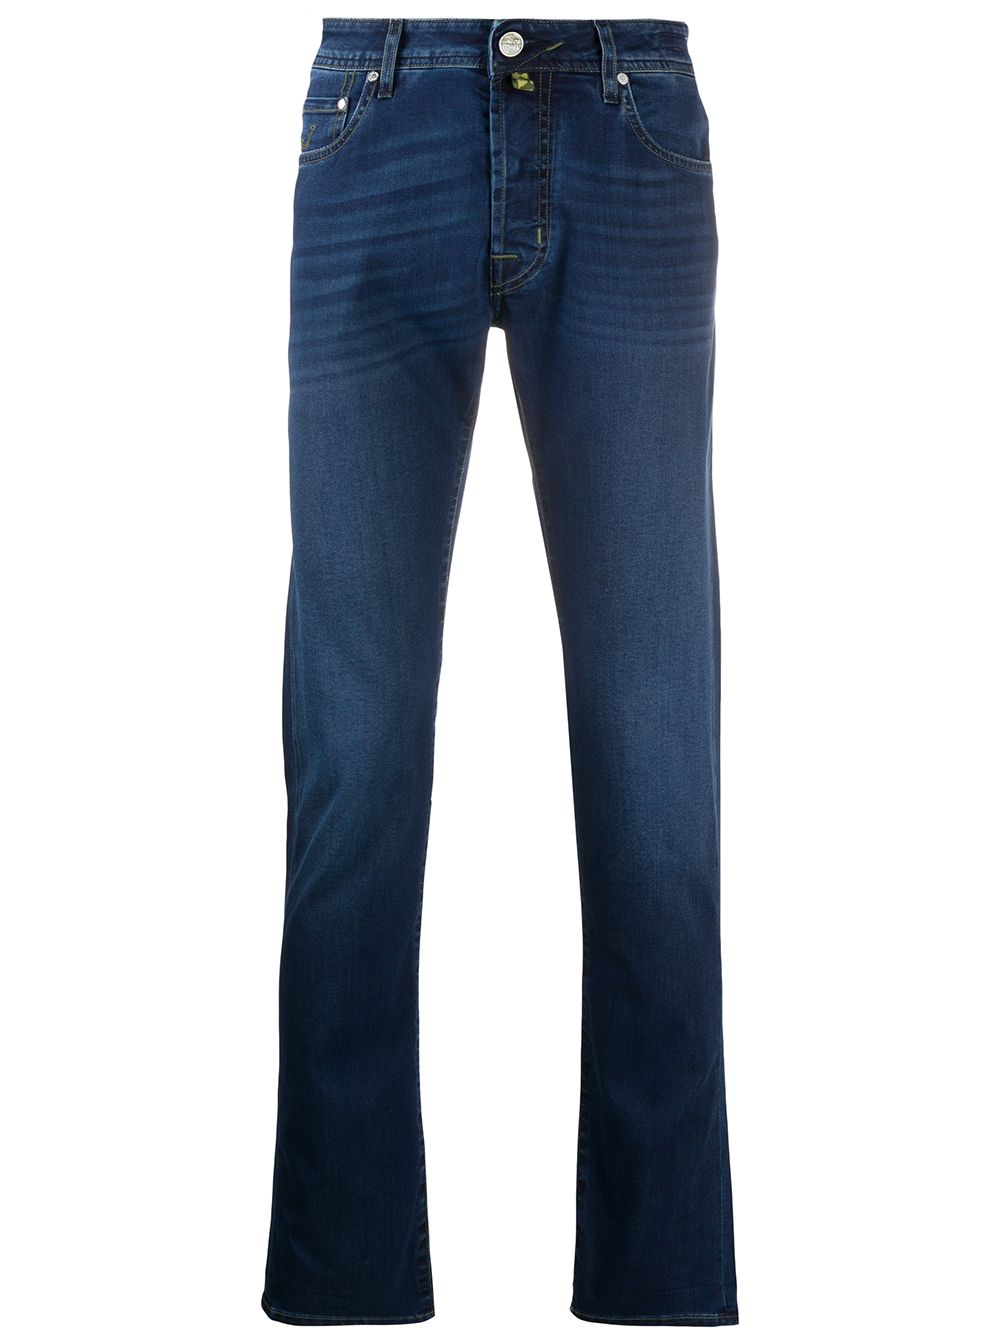 фото Jacob cohen джинсы кроя слим с заниженной талией